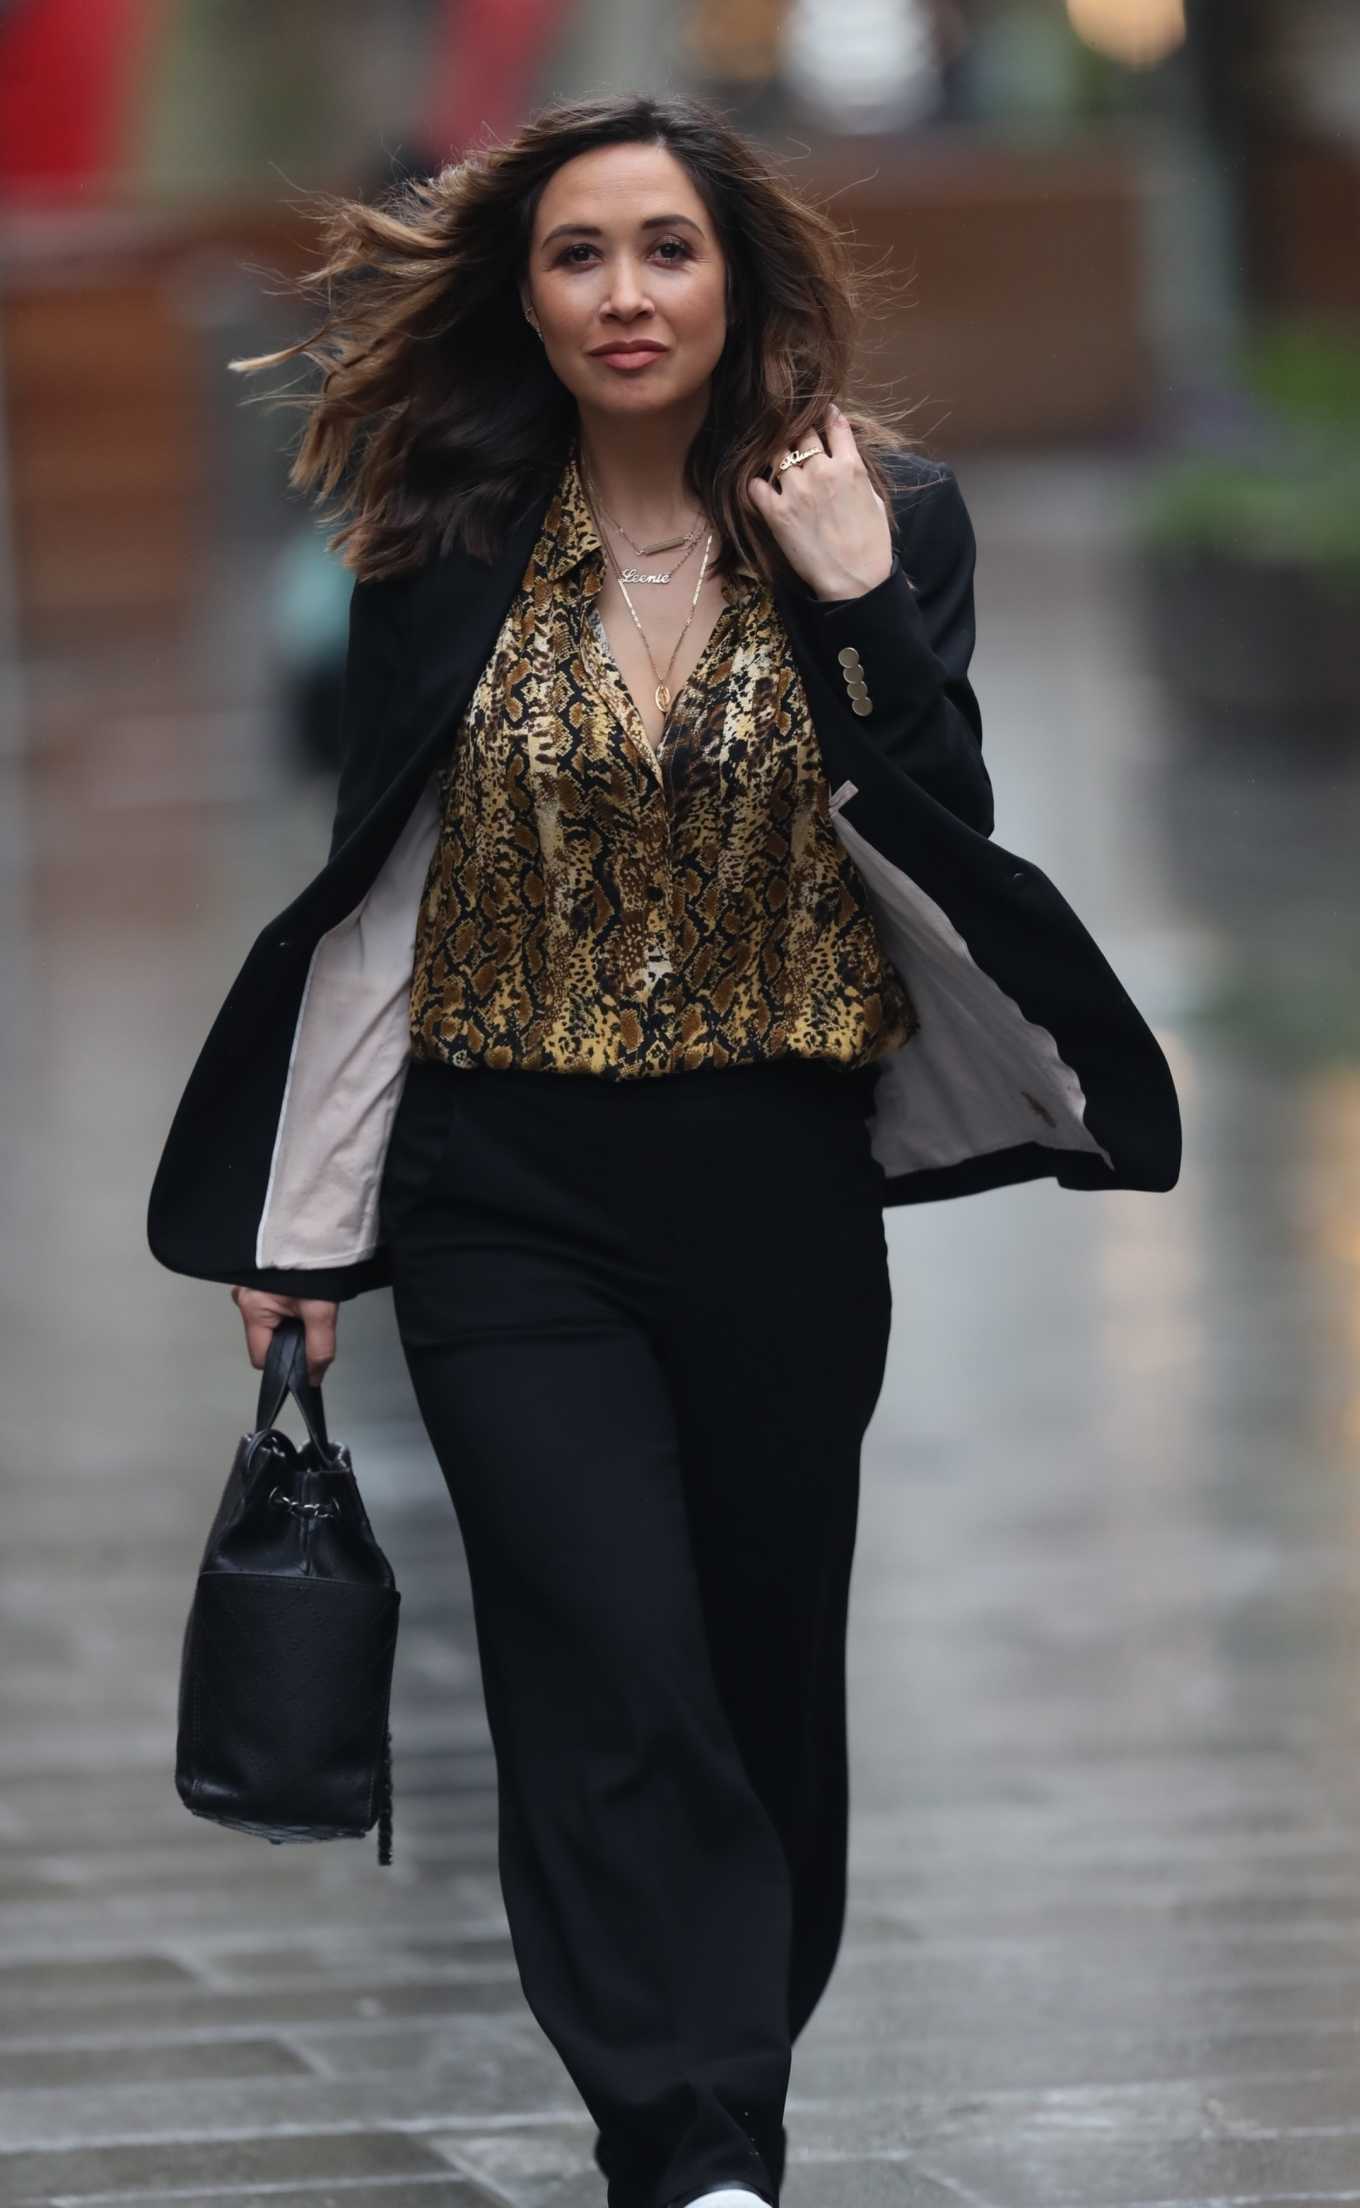 Myleene Klass wears black pantsuit while arrives at Smooth Radio in London